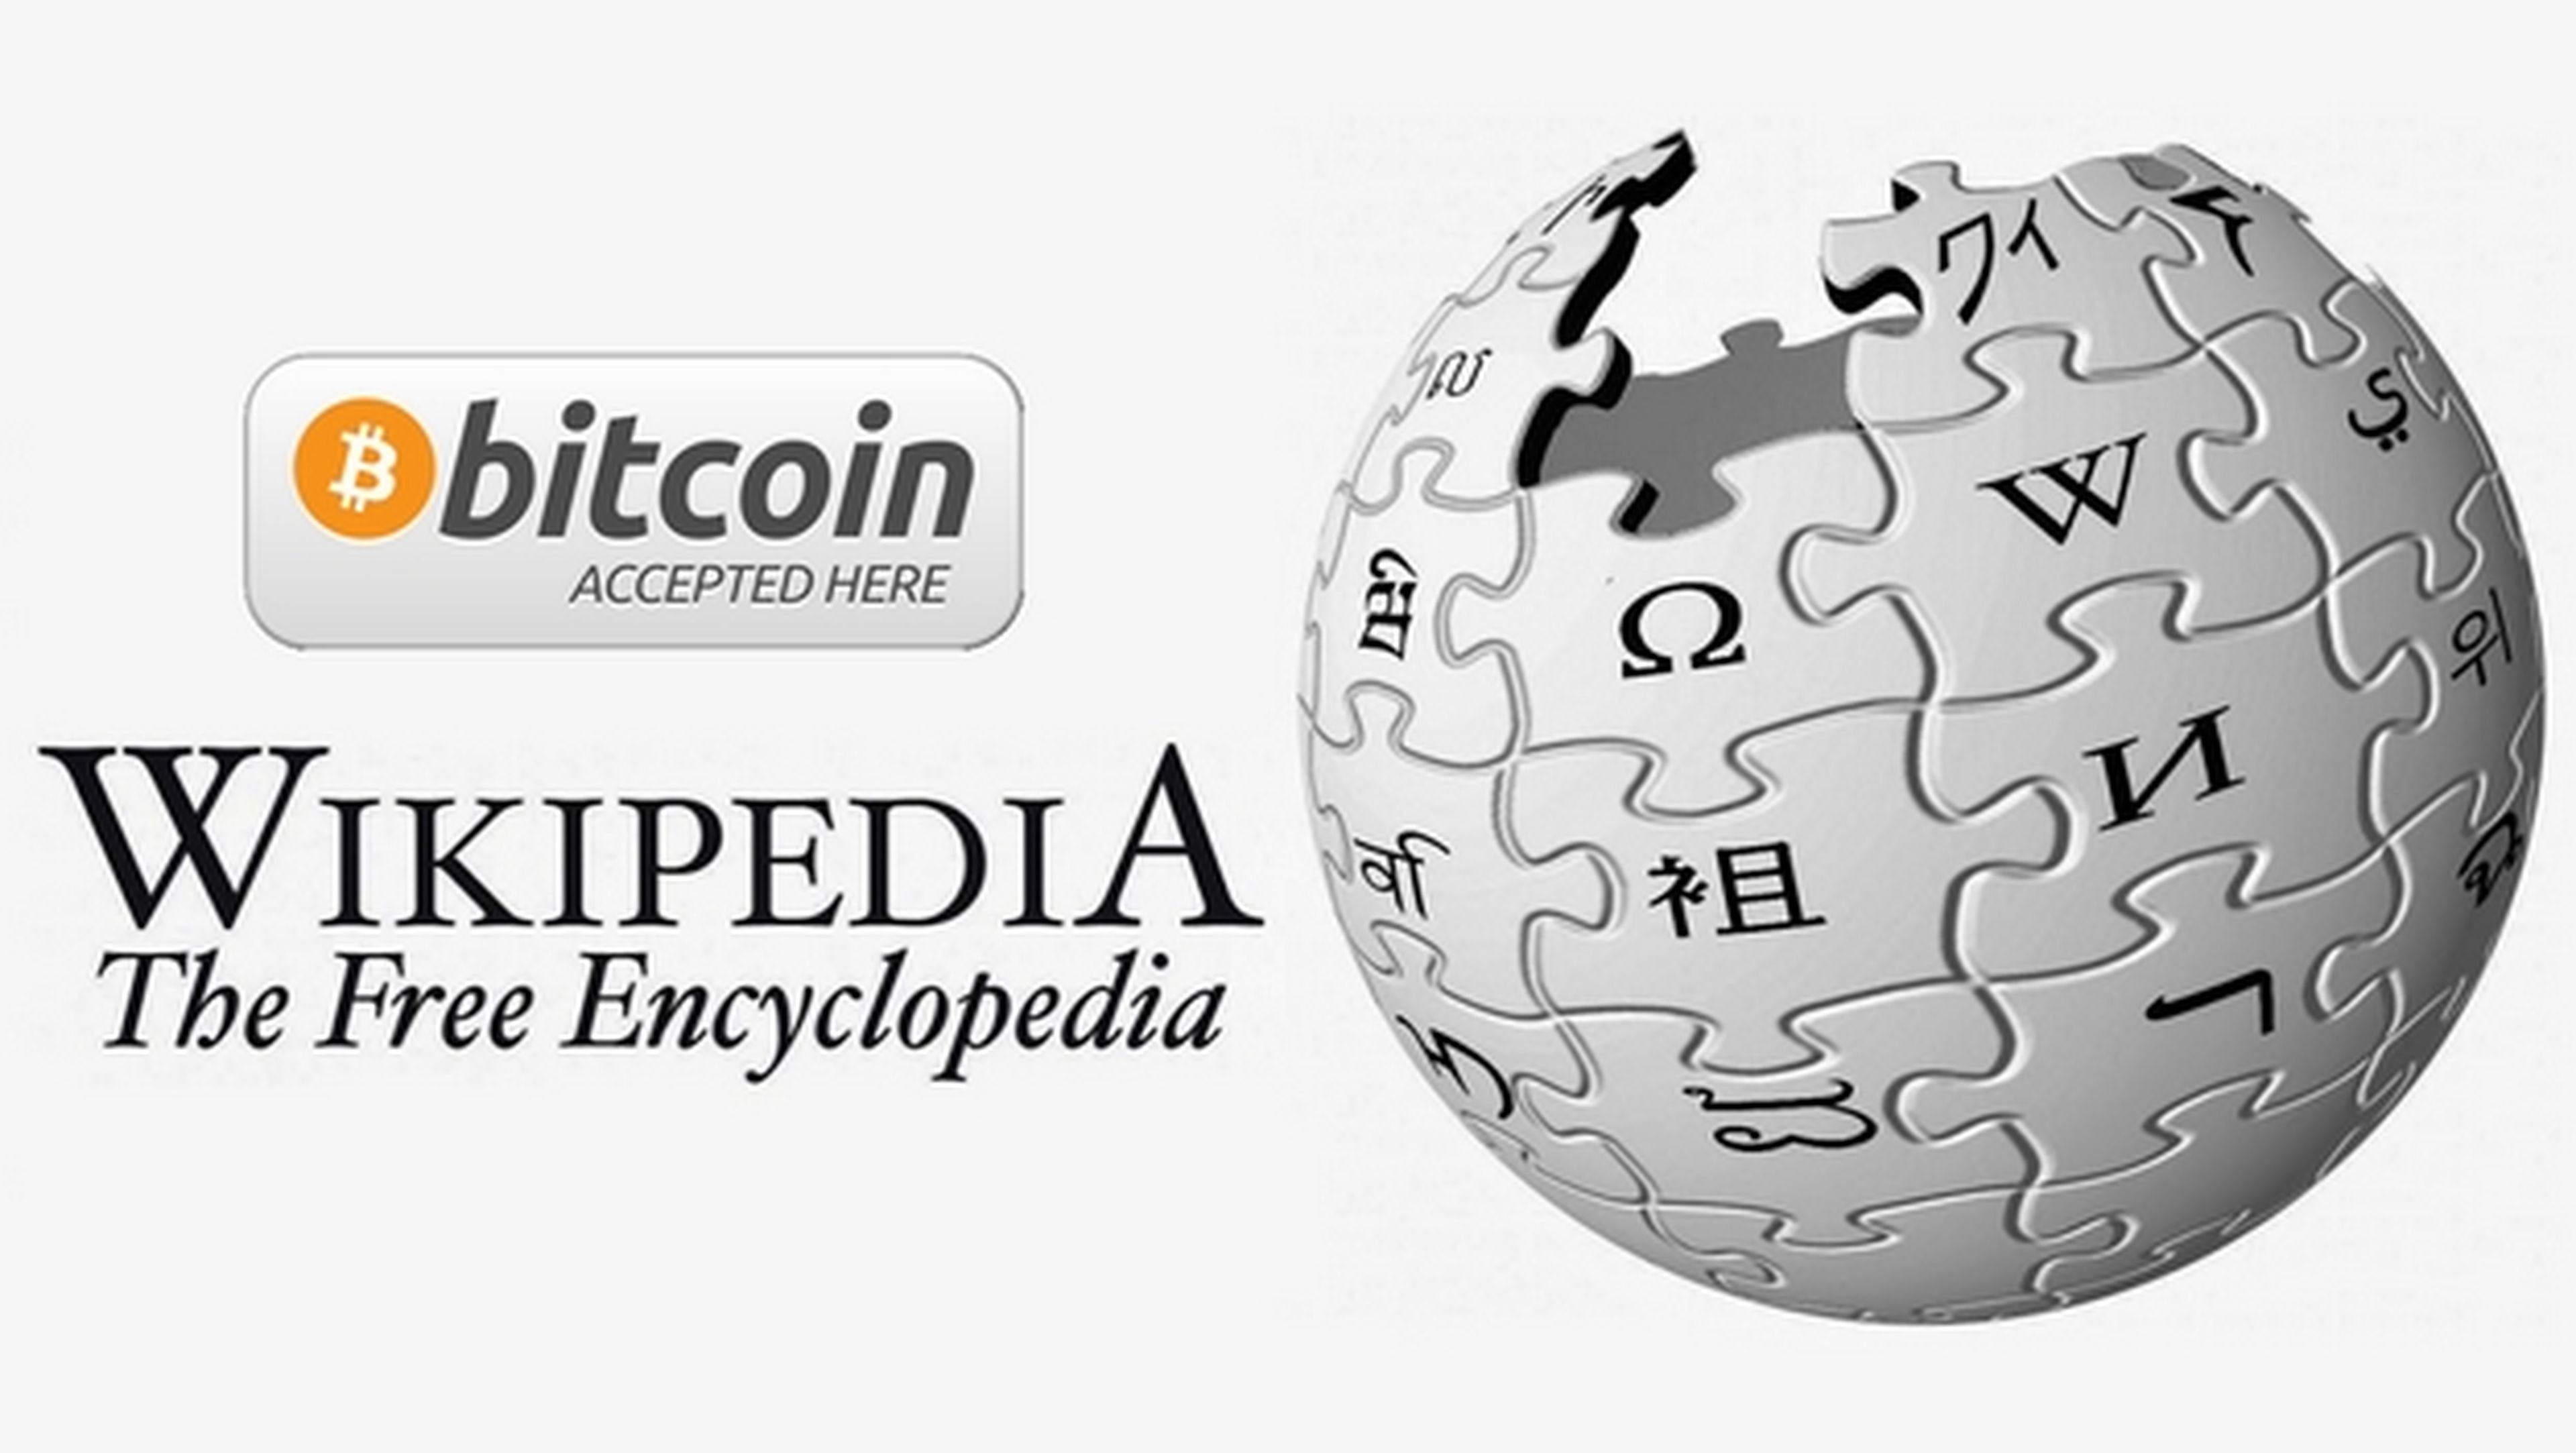 Wikipedia recibe 140.000 dólares en donaciones con Bitcoin, en sólo una semana.